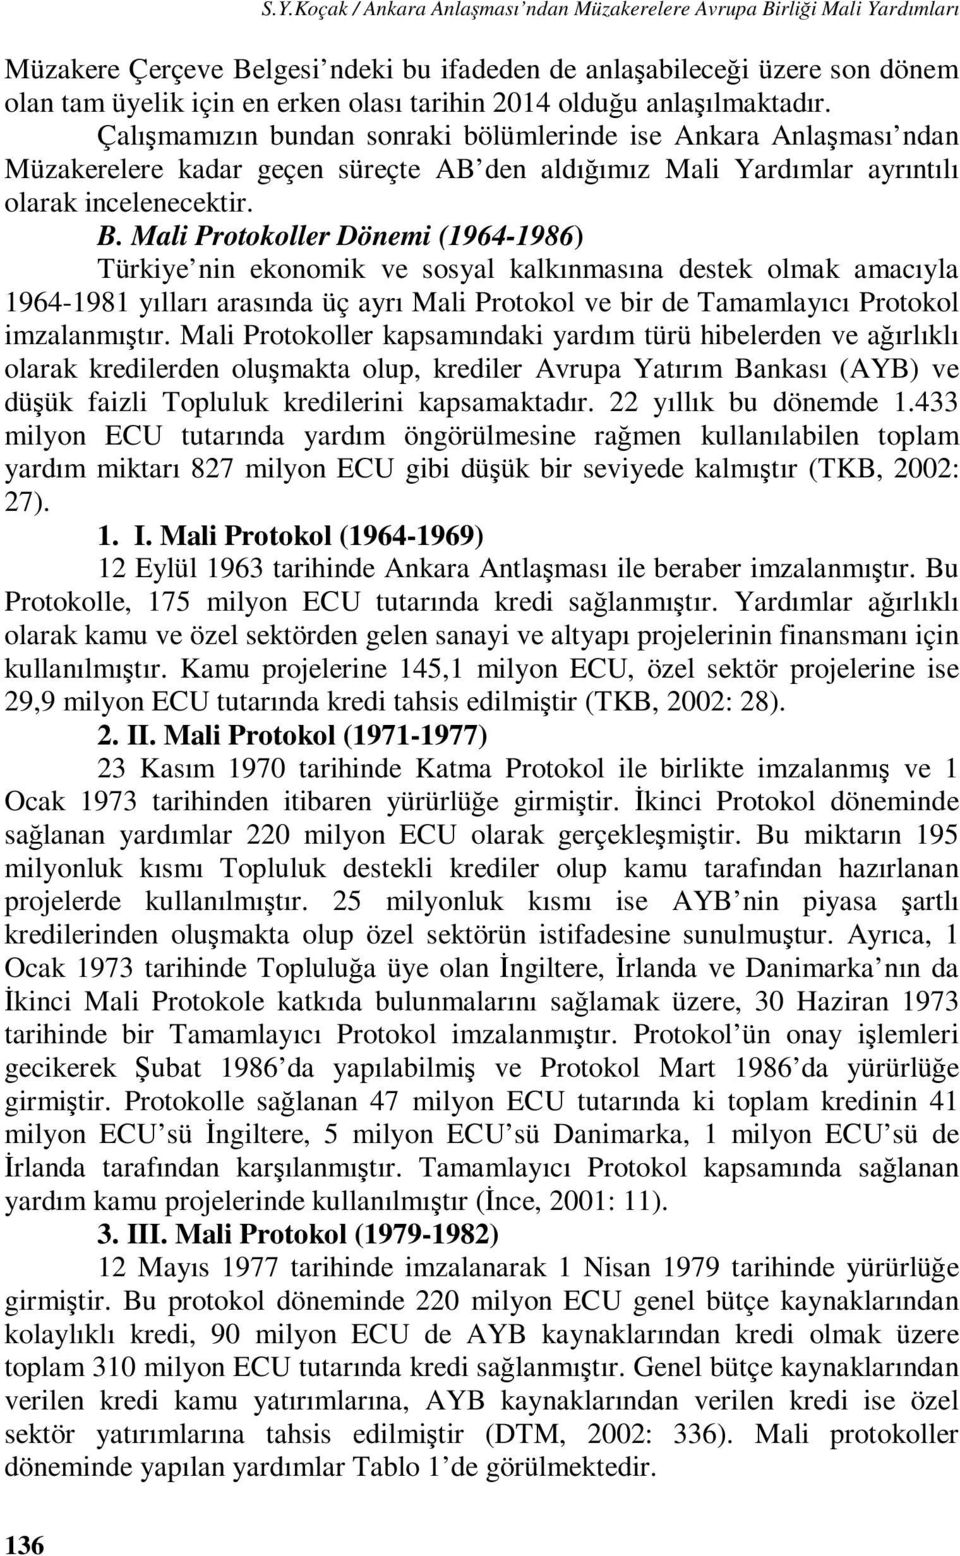 Mali Protokoller Dönemi (1964-1986) Türkiye nin ekonomik ve sosyal kalkınmasına destek olmak amacıyla 1964-1981 yılları arasında üç ayrı Mali Protokol ve bir de Tamamlayıcı Protokol imzalanmıştır.